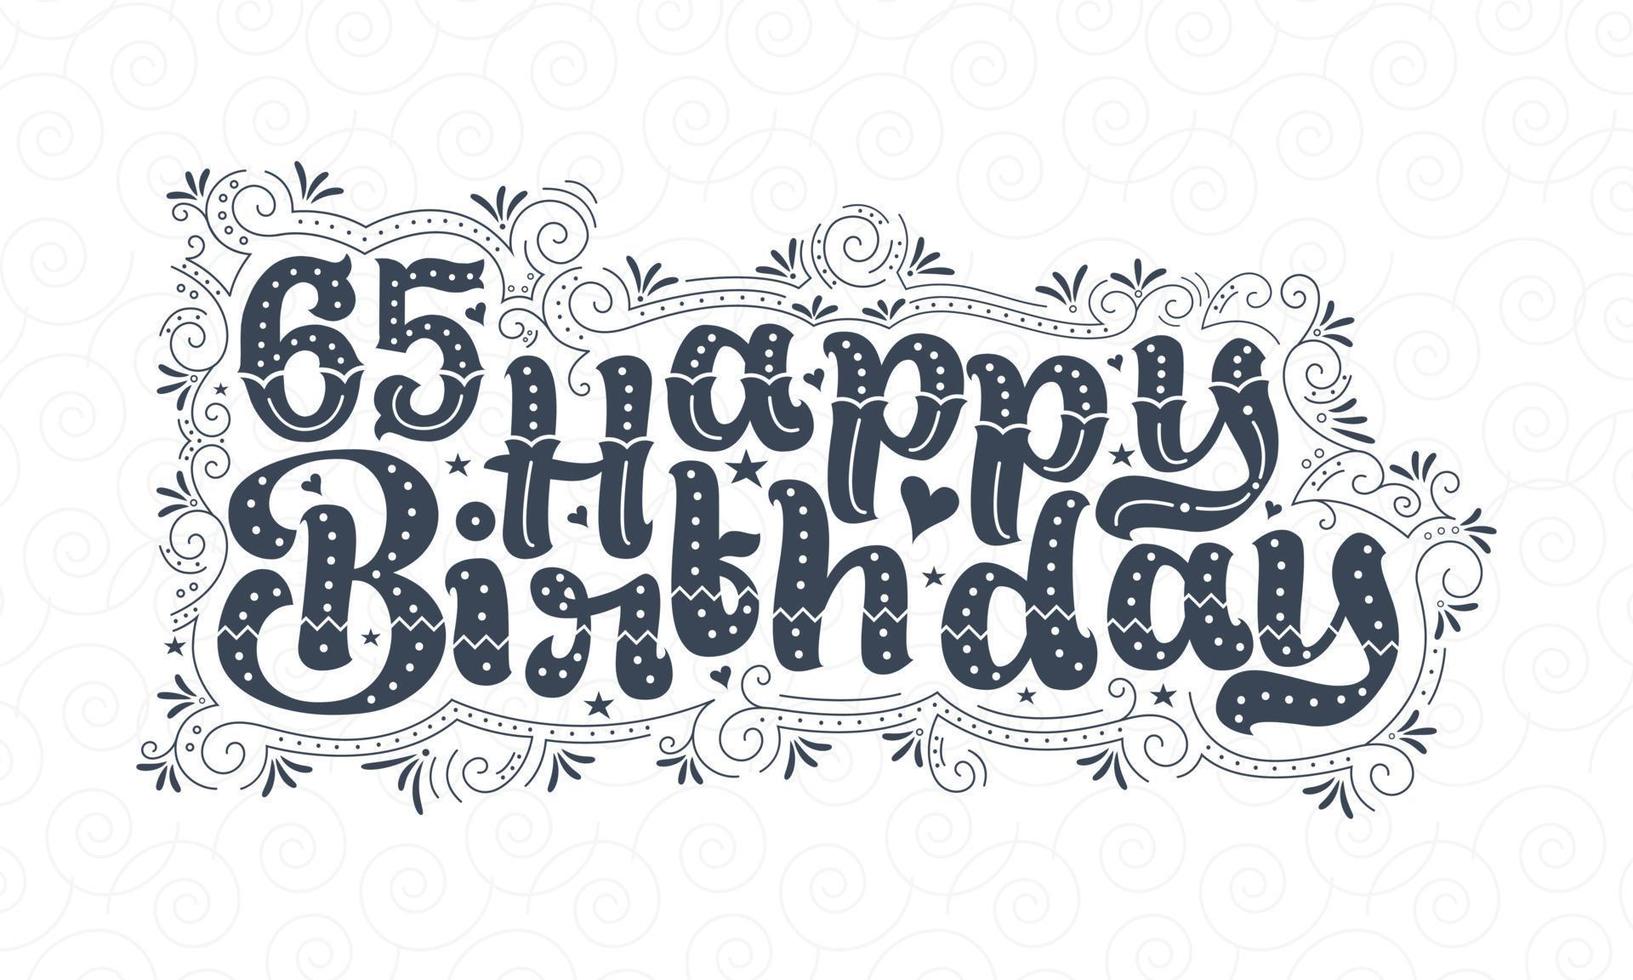 65e gelukkige verjaardag belettering, 65 jaar verjaardag mooi typografieontwerp met stippen, lijnen en bladeren. vector